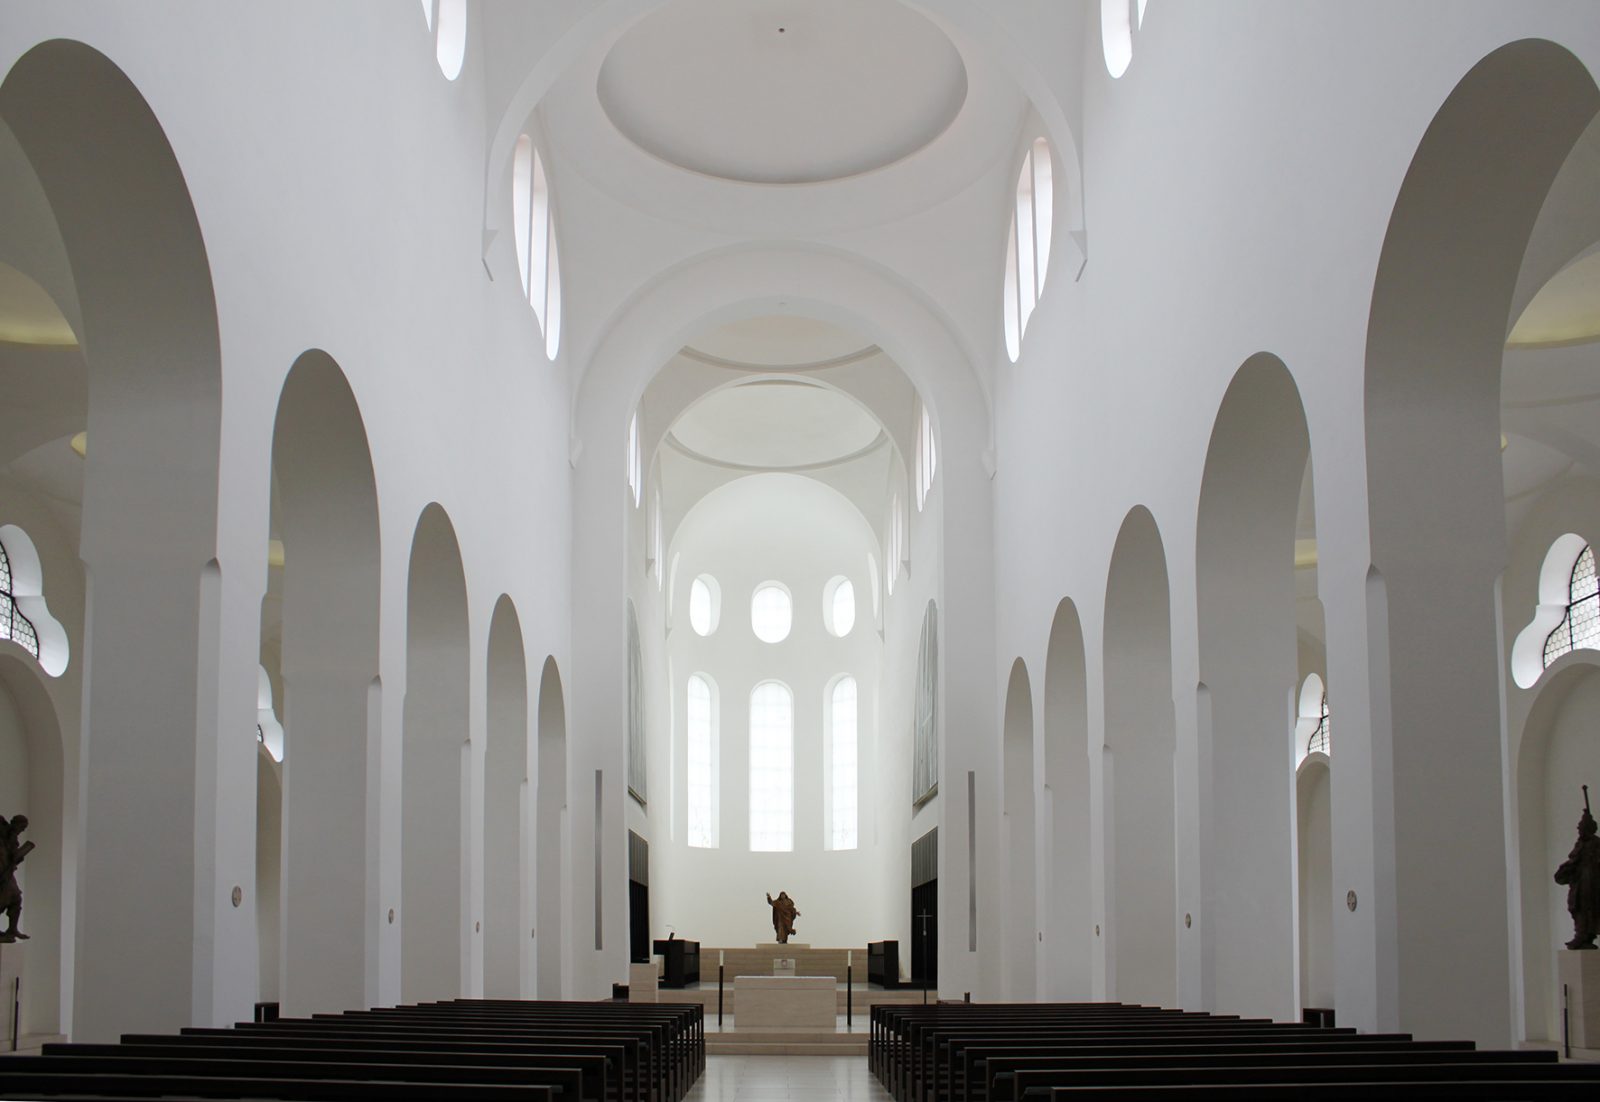 Kath. Stadtpfarrkirche St. Moritz in Augsburg, 2. Bauabschnitt